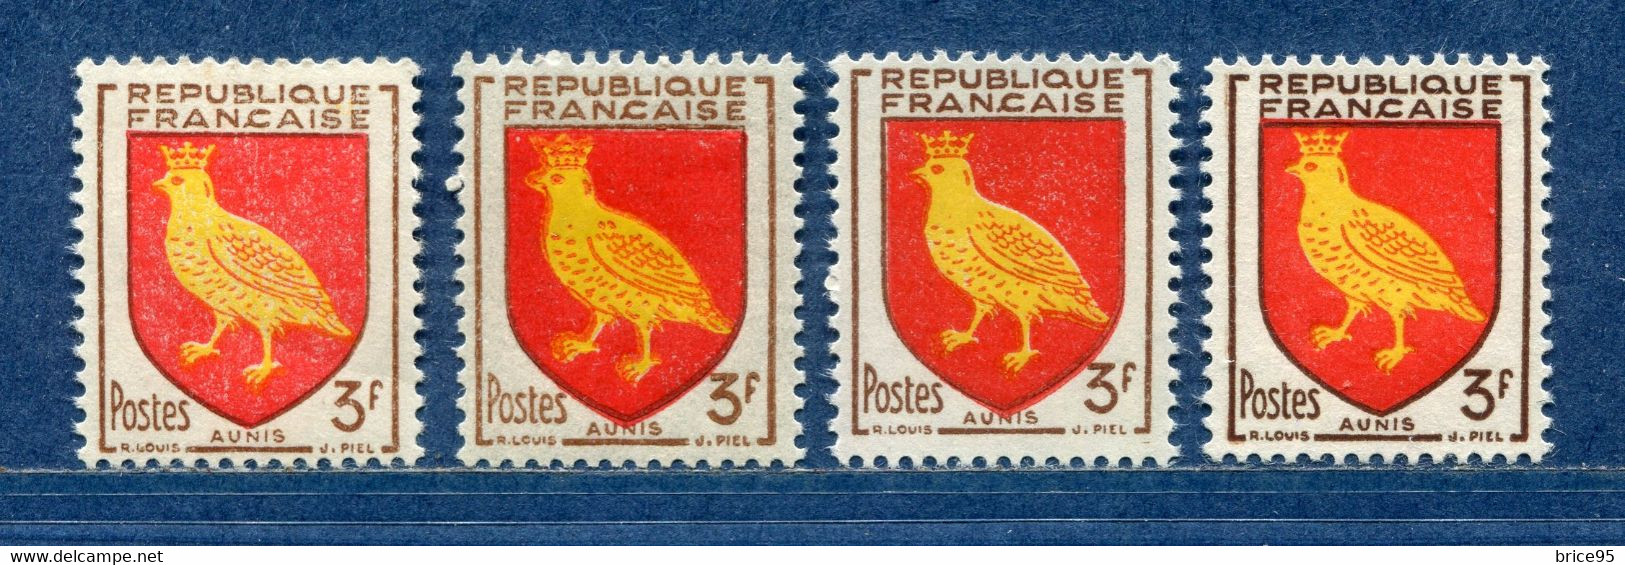 ⭐ France - Variété - YT N° 1004 - Couleurs - Pétouilles - Neuf Sans Charnière - 1954 ⭐ - Ungebraucht